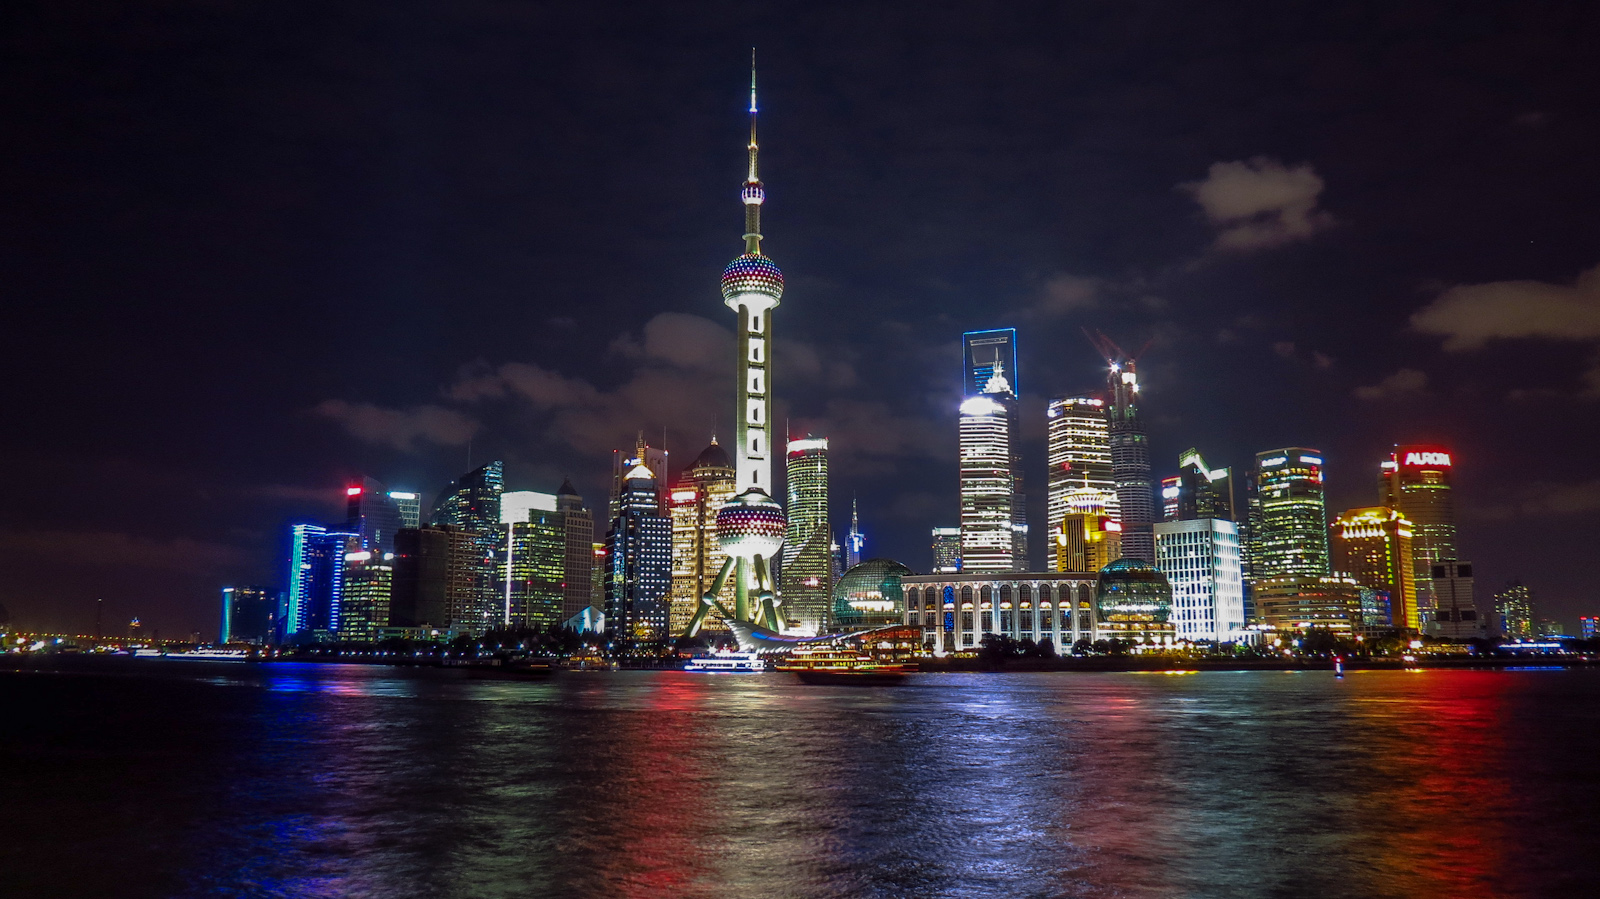 shanghai waterfront night panorama : Flashpacking Travel Blog